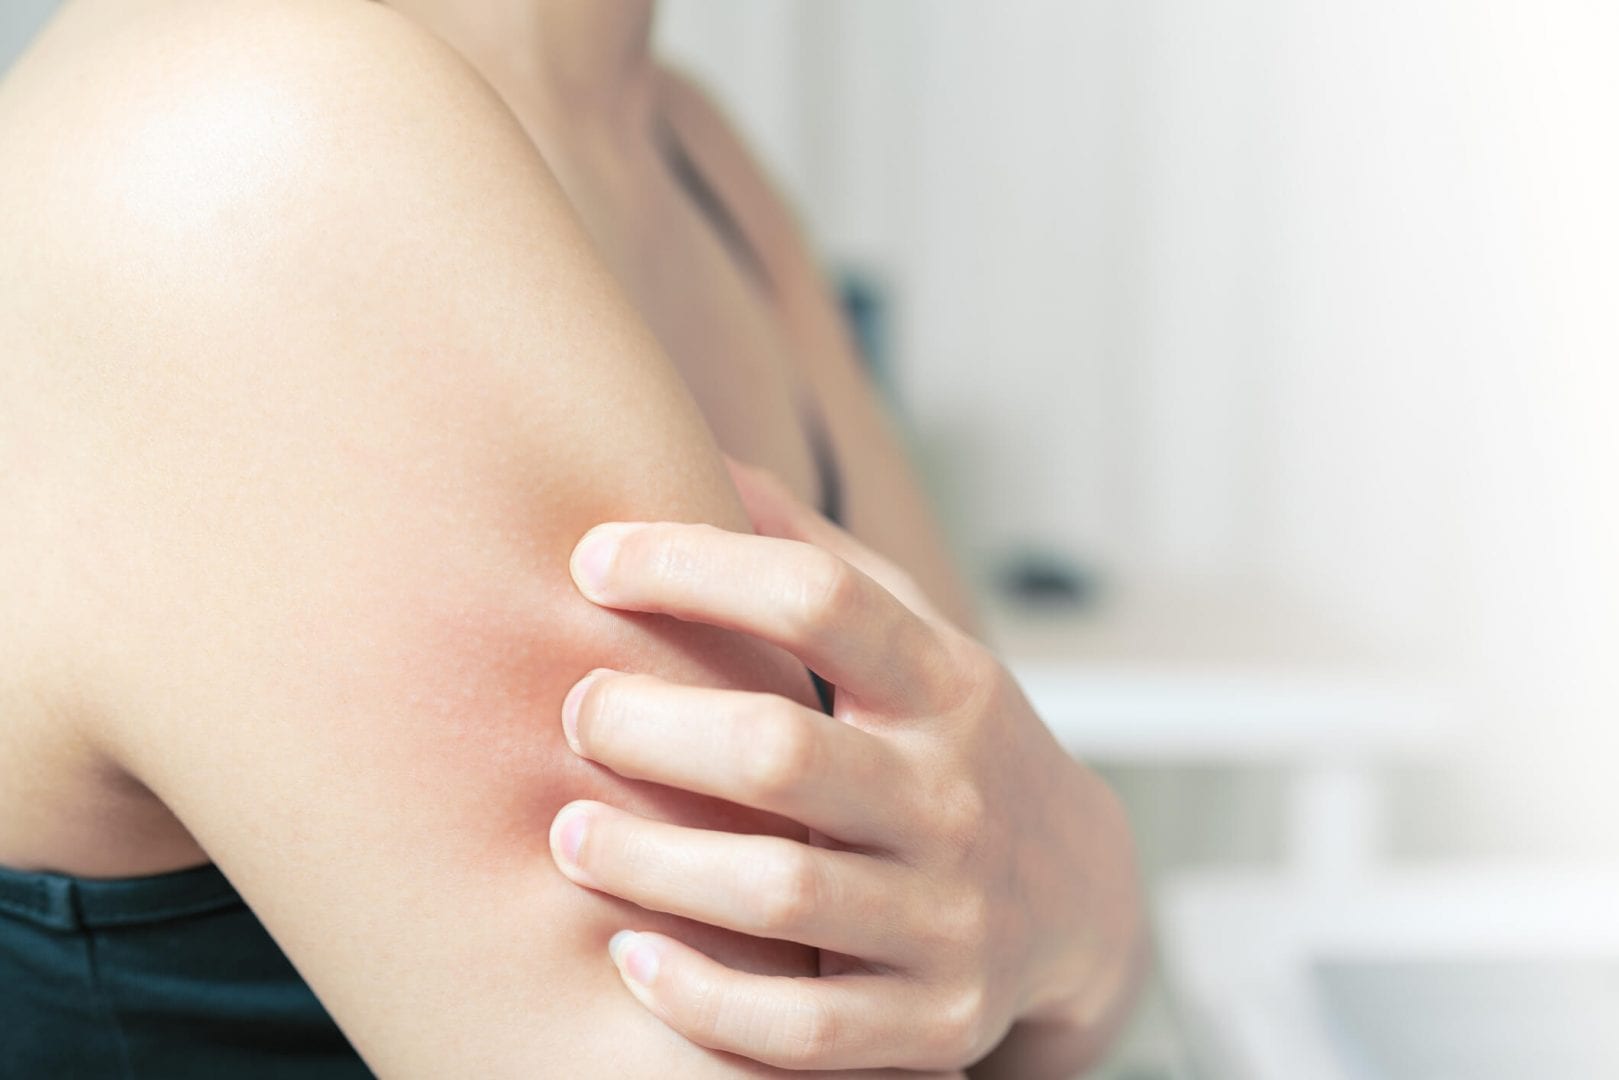 Alergias na pele - o que é, o que causa e como tratar